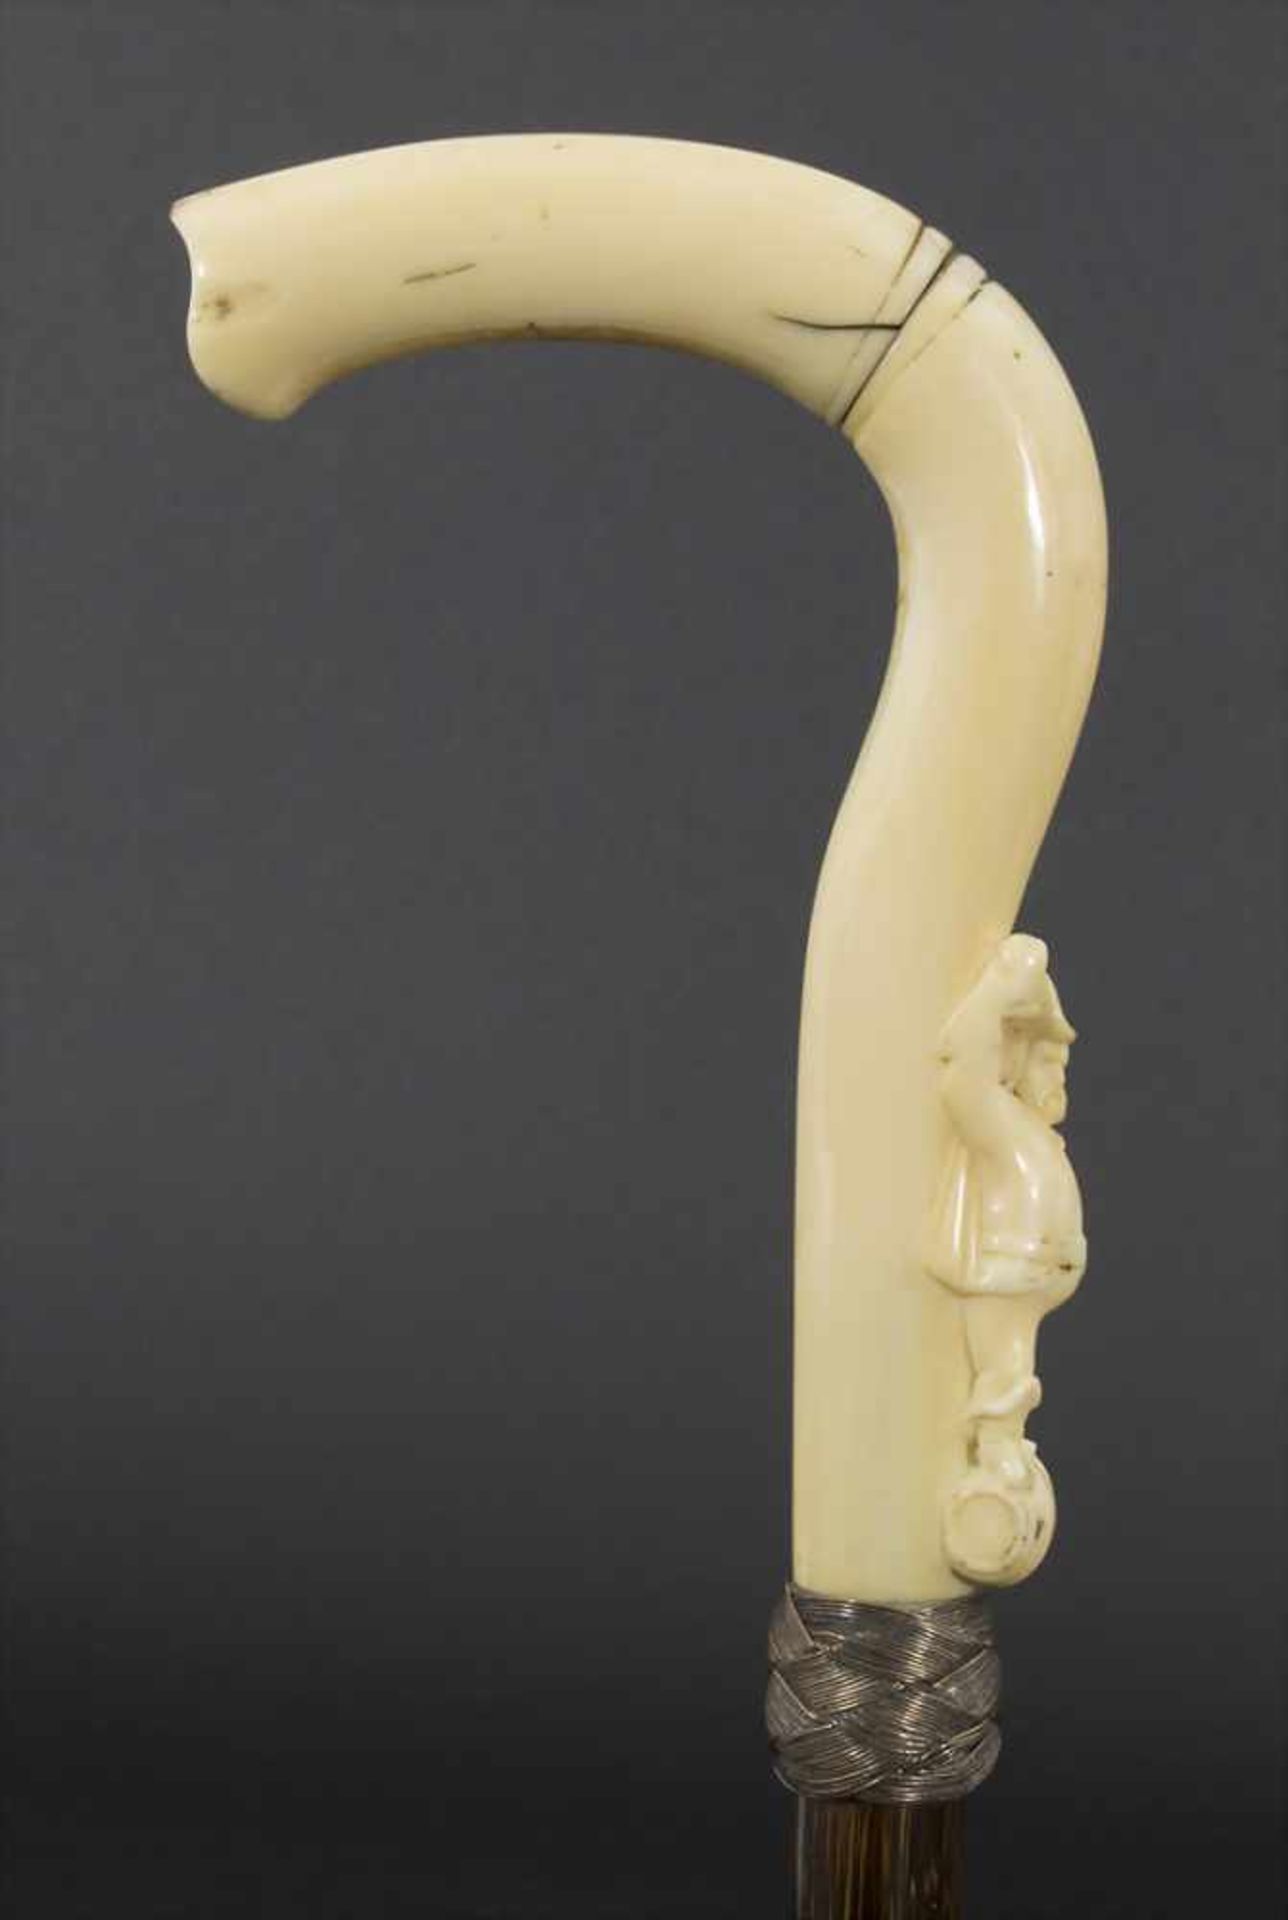 Gehstock mit Figurengriff 'Weintrinker' / A cane with figural handle 'Wine drinker', um